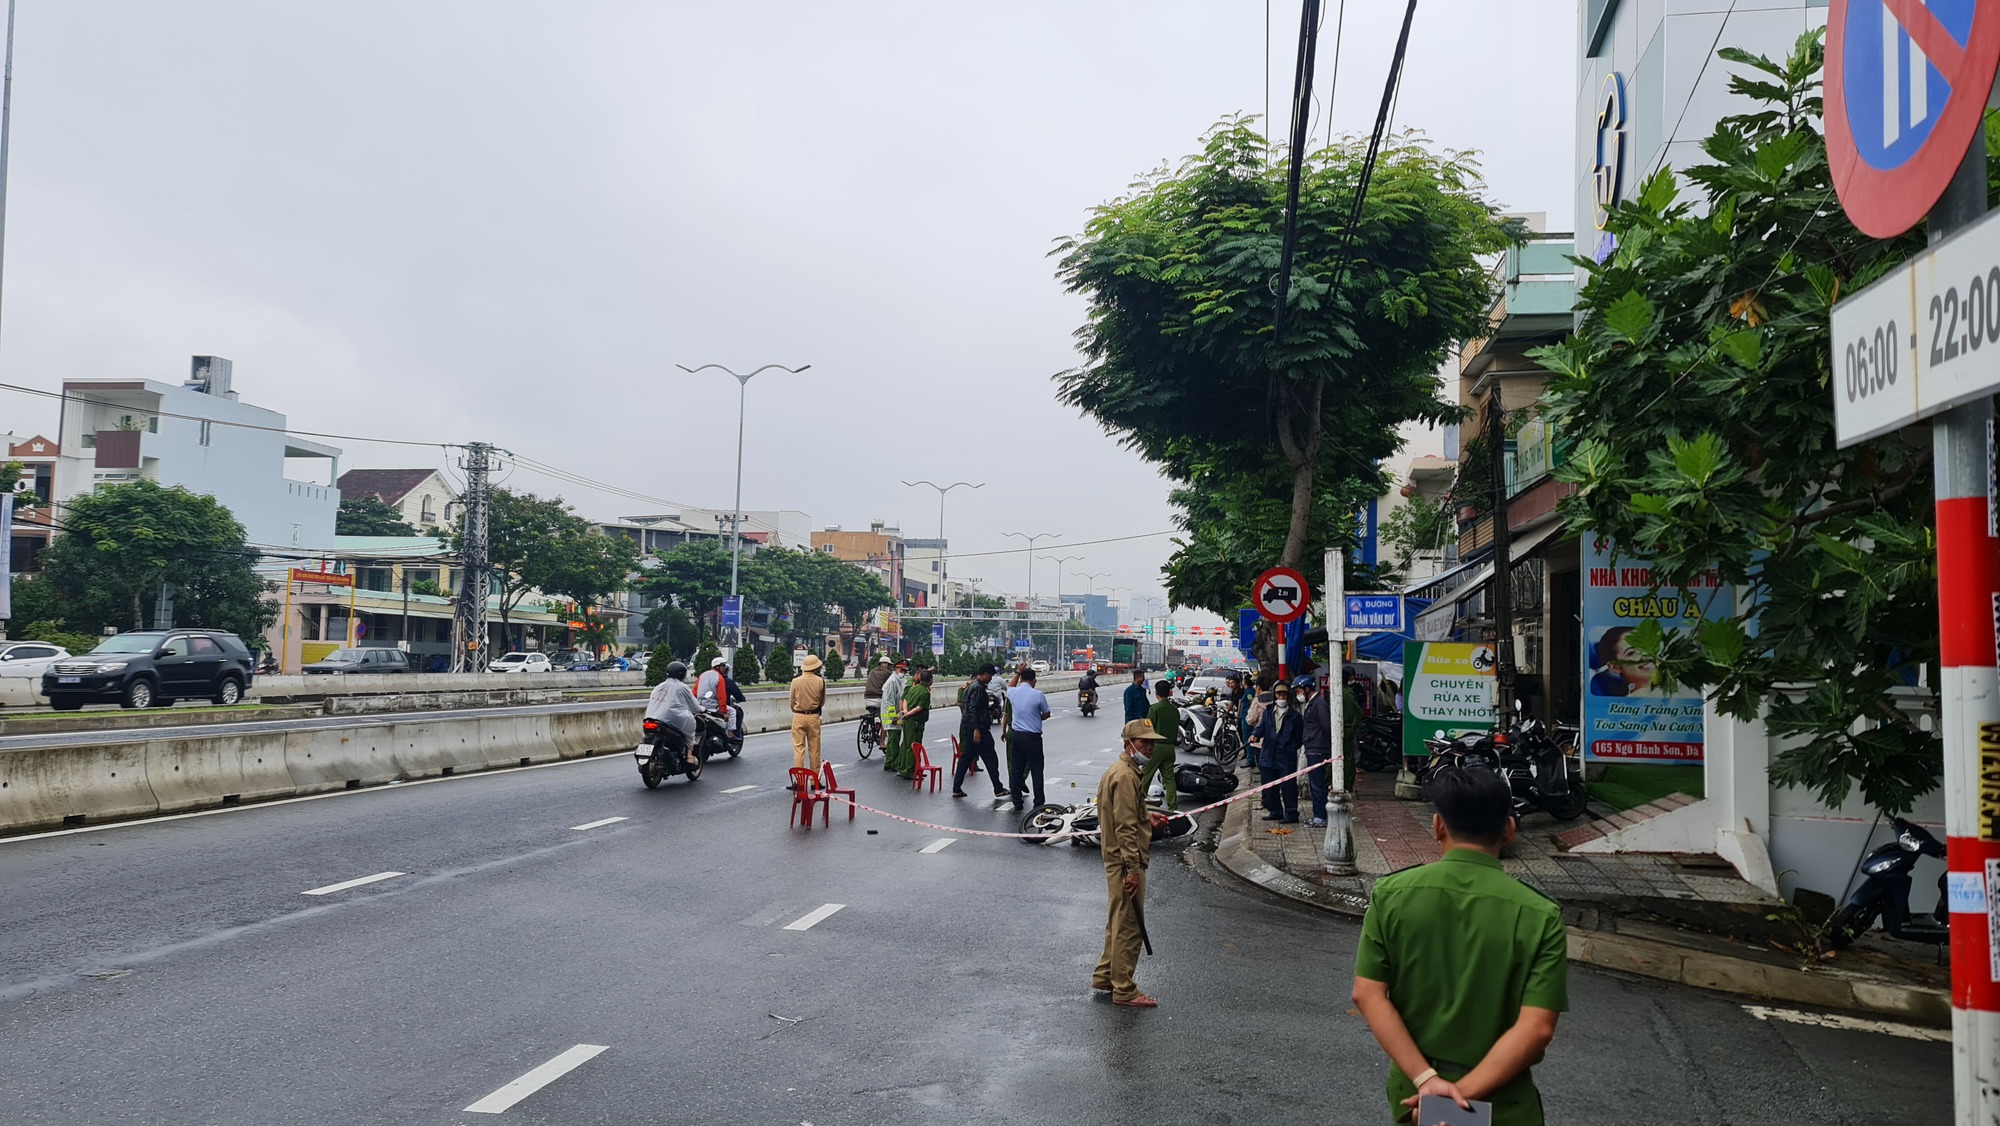 NÓNG: Cướp ngân hàng tại Đà Nẵng, 1 bảo vệ bị thương rất nặng - Ảnh 4.